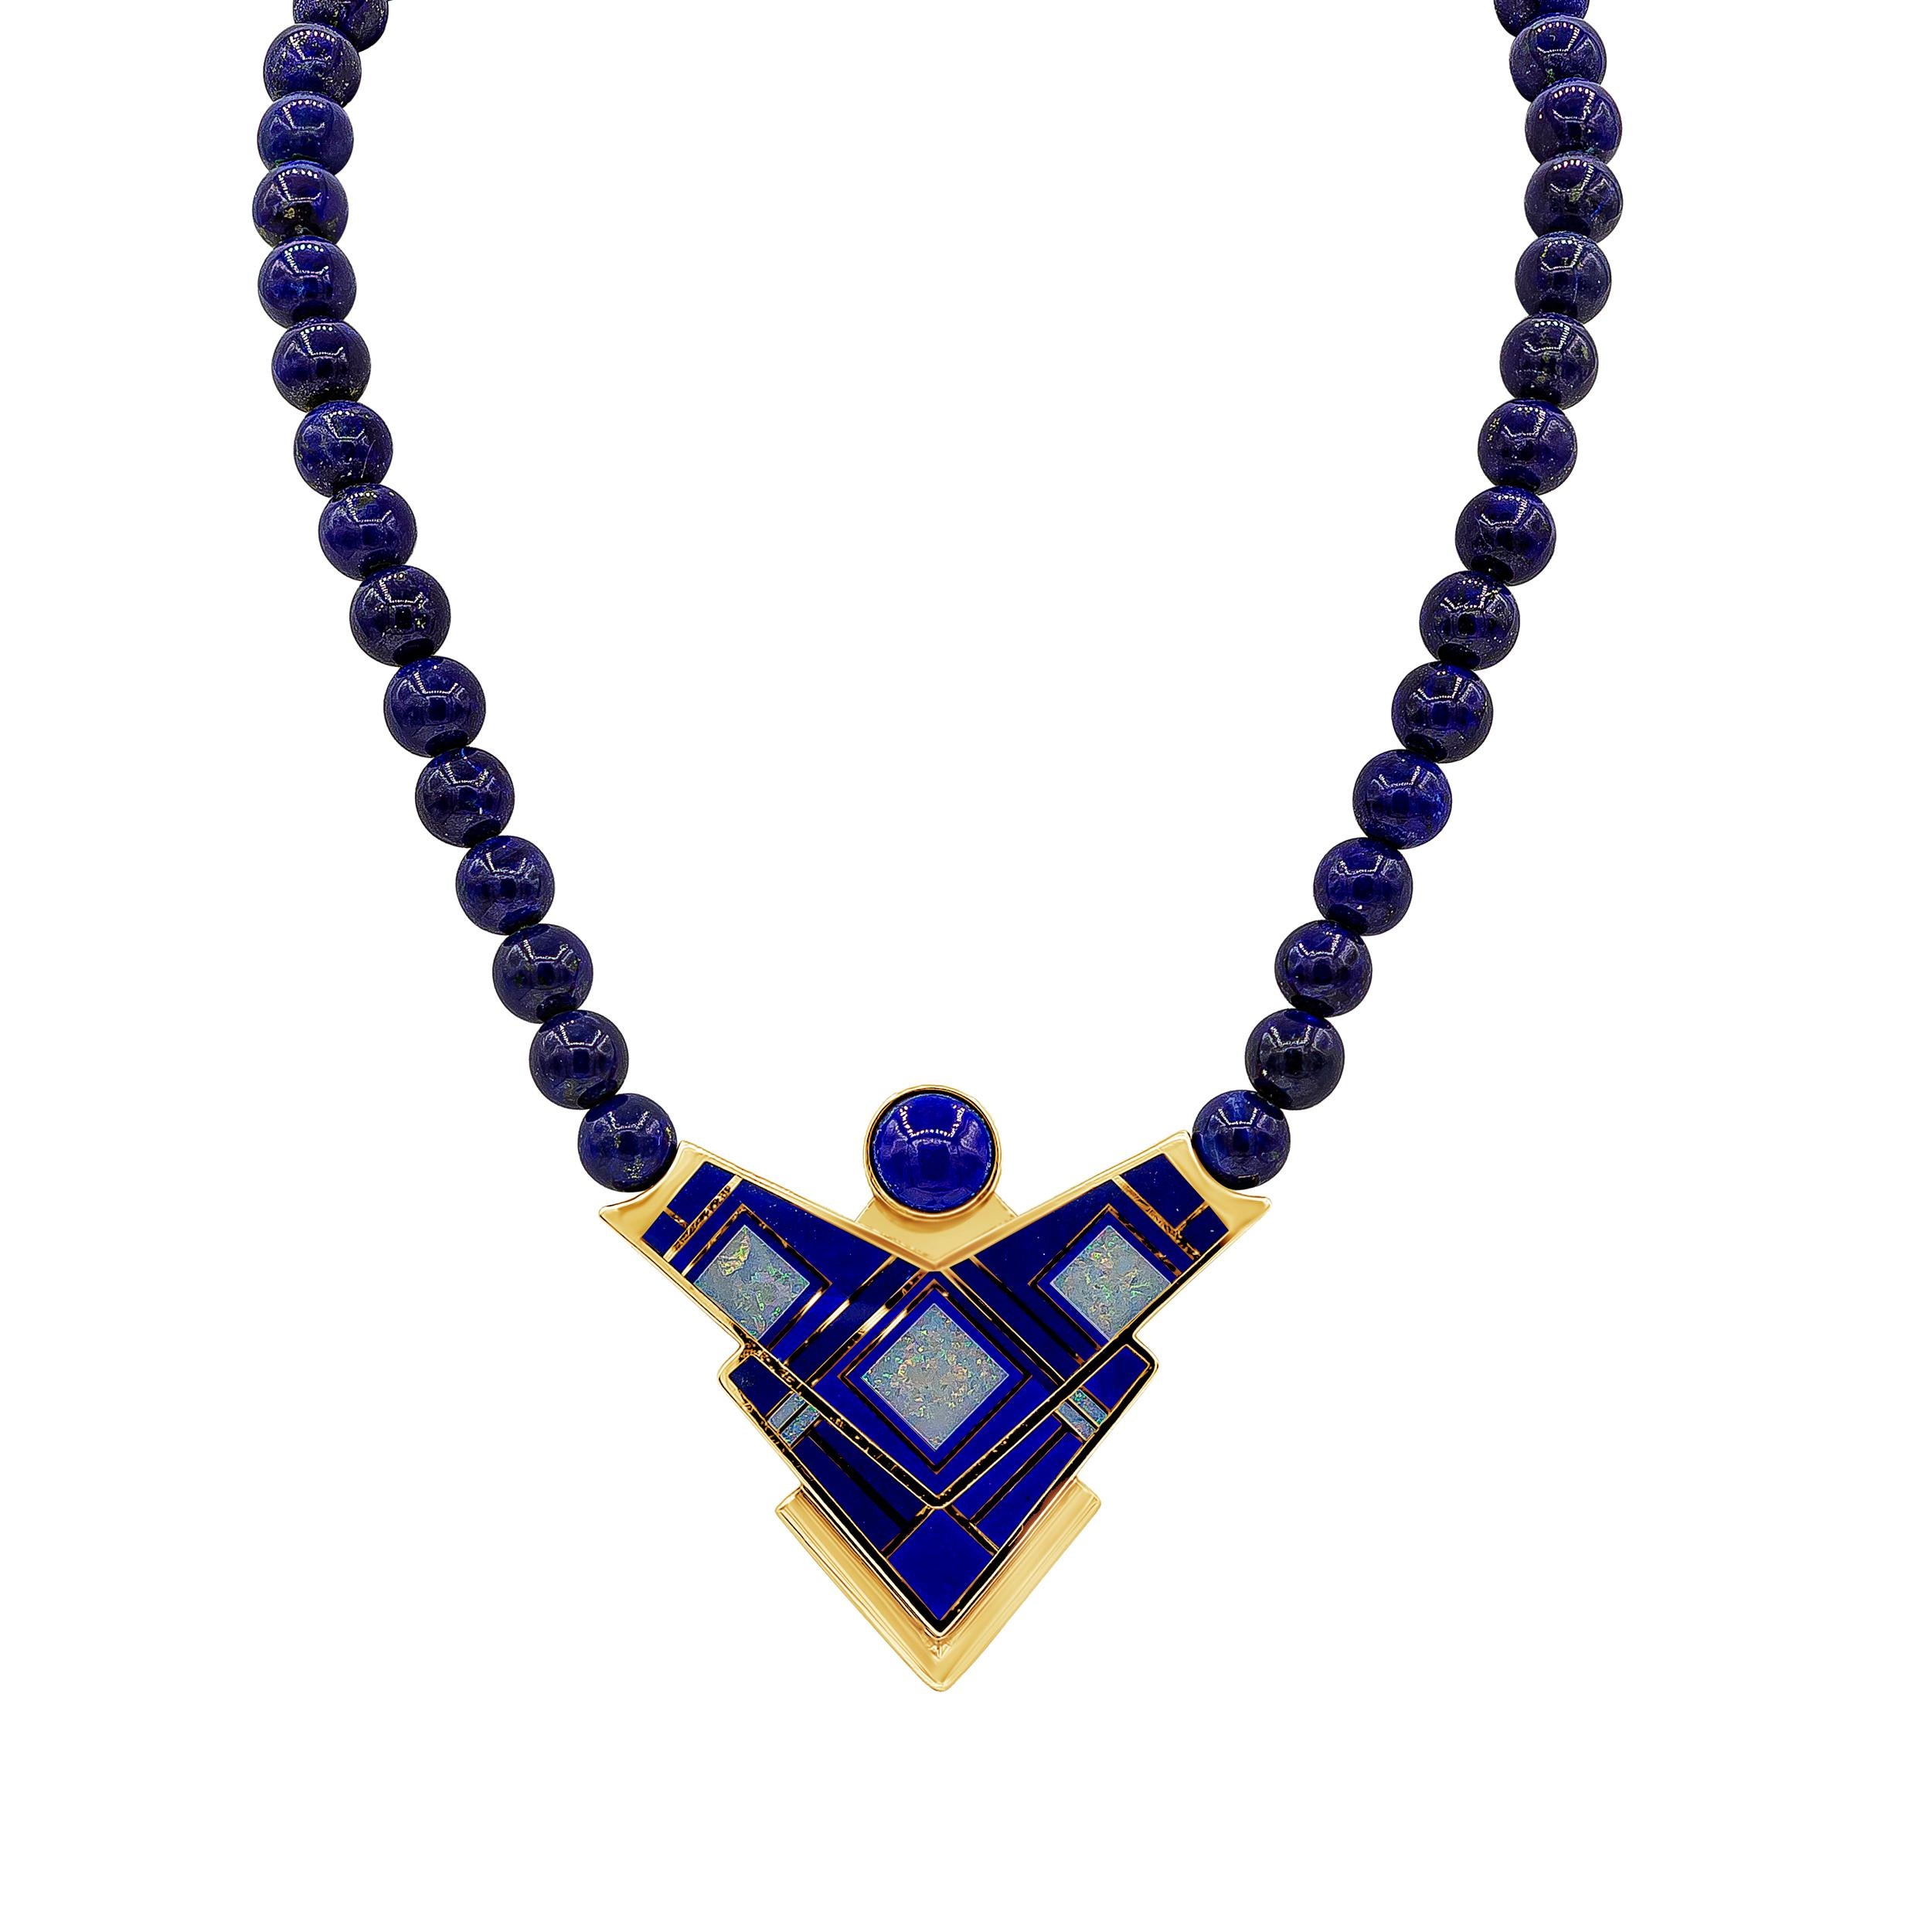 Un collier unique présentant un motif géométrique amérindien en or jaune 14 carats, rehaussé d'émail et de lapis-lazuli. Pendentif suspendu à des perles de lapis-lazuli. Fabriqué par Tracey Designs.

